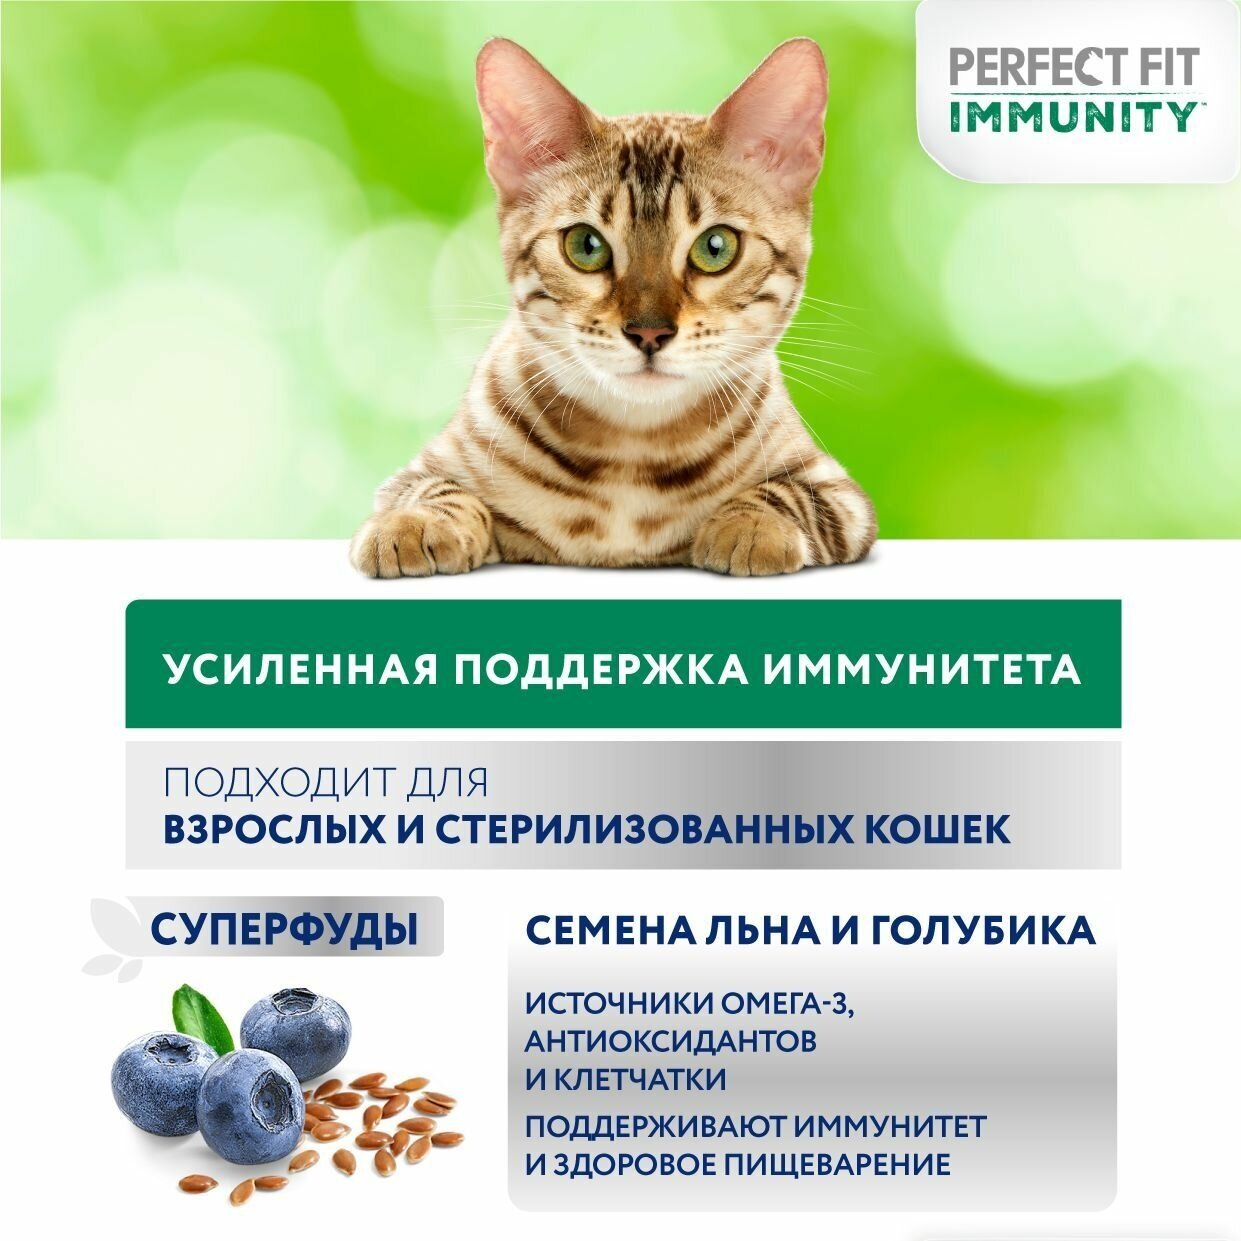 Perfect Fit Immunity корм для иммунитета кошек, говядина, семена льна, голубика, 5,5 кг. - фотография № 8